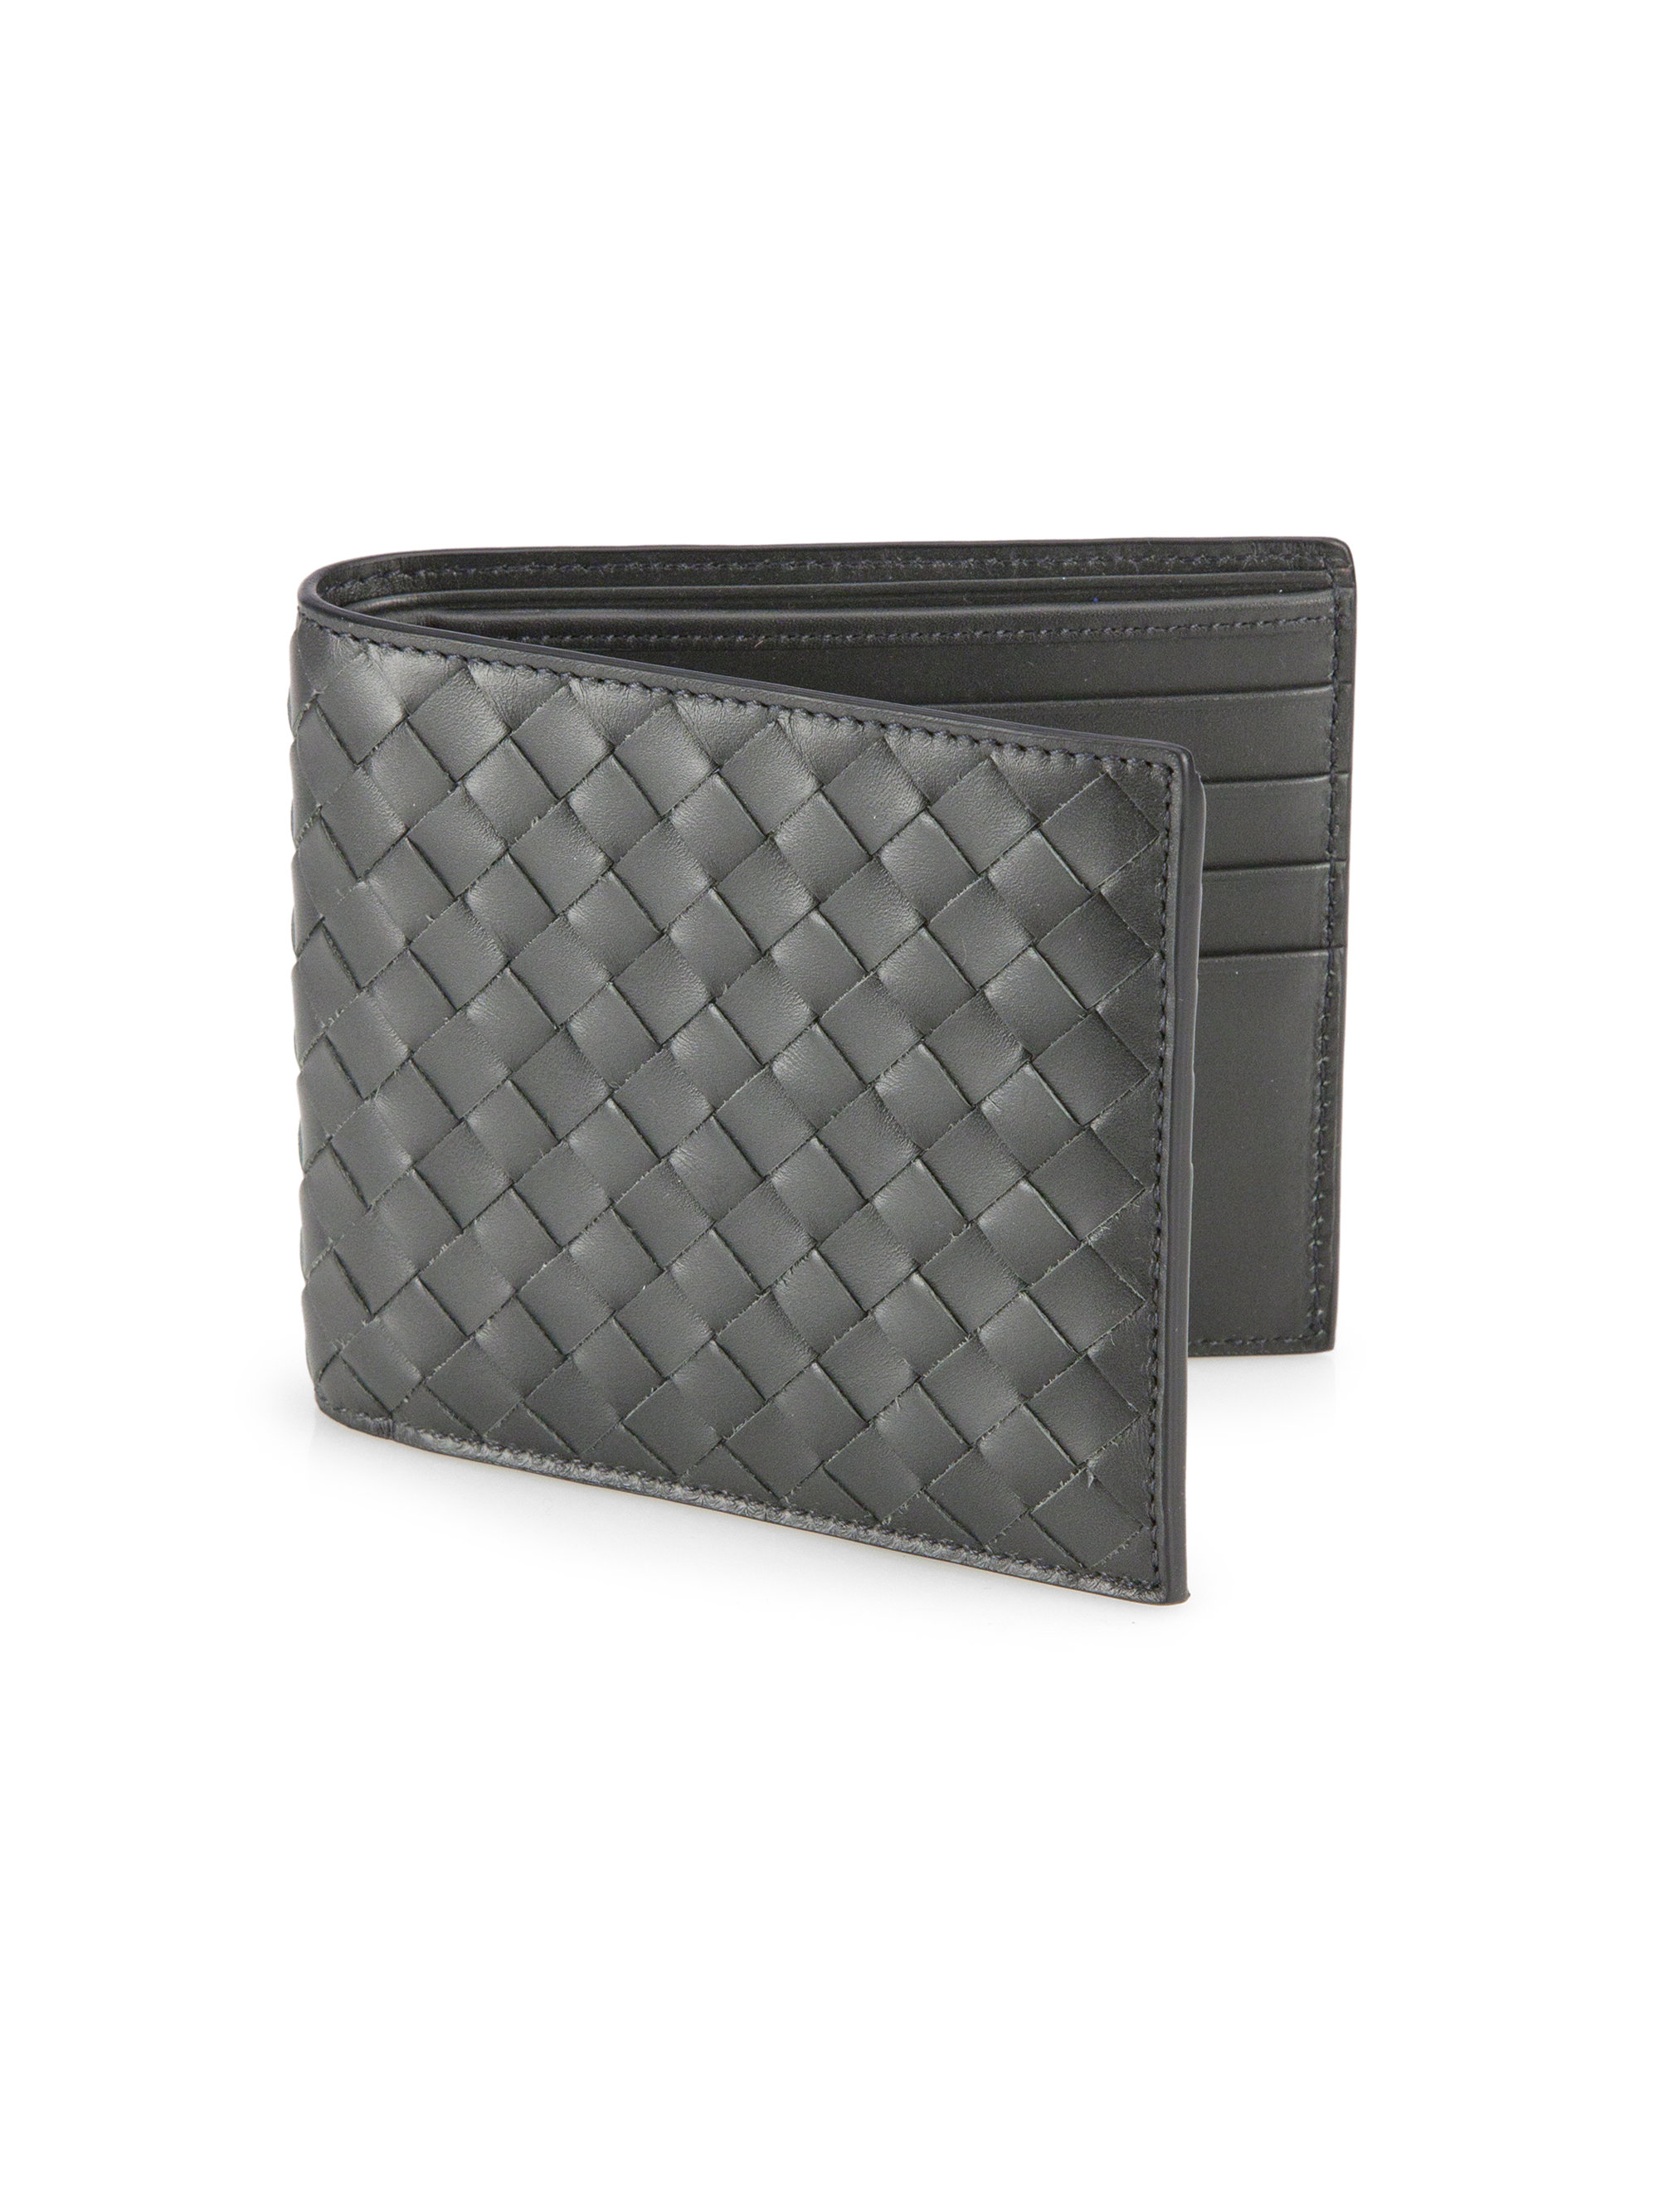 Bottega veneta Intrecciato Leather Wallet in Gray for Men | Lyst